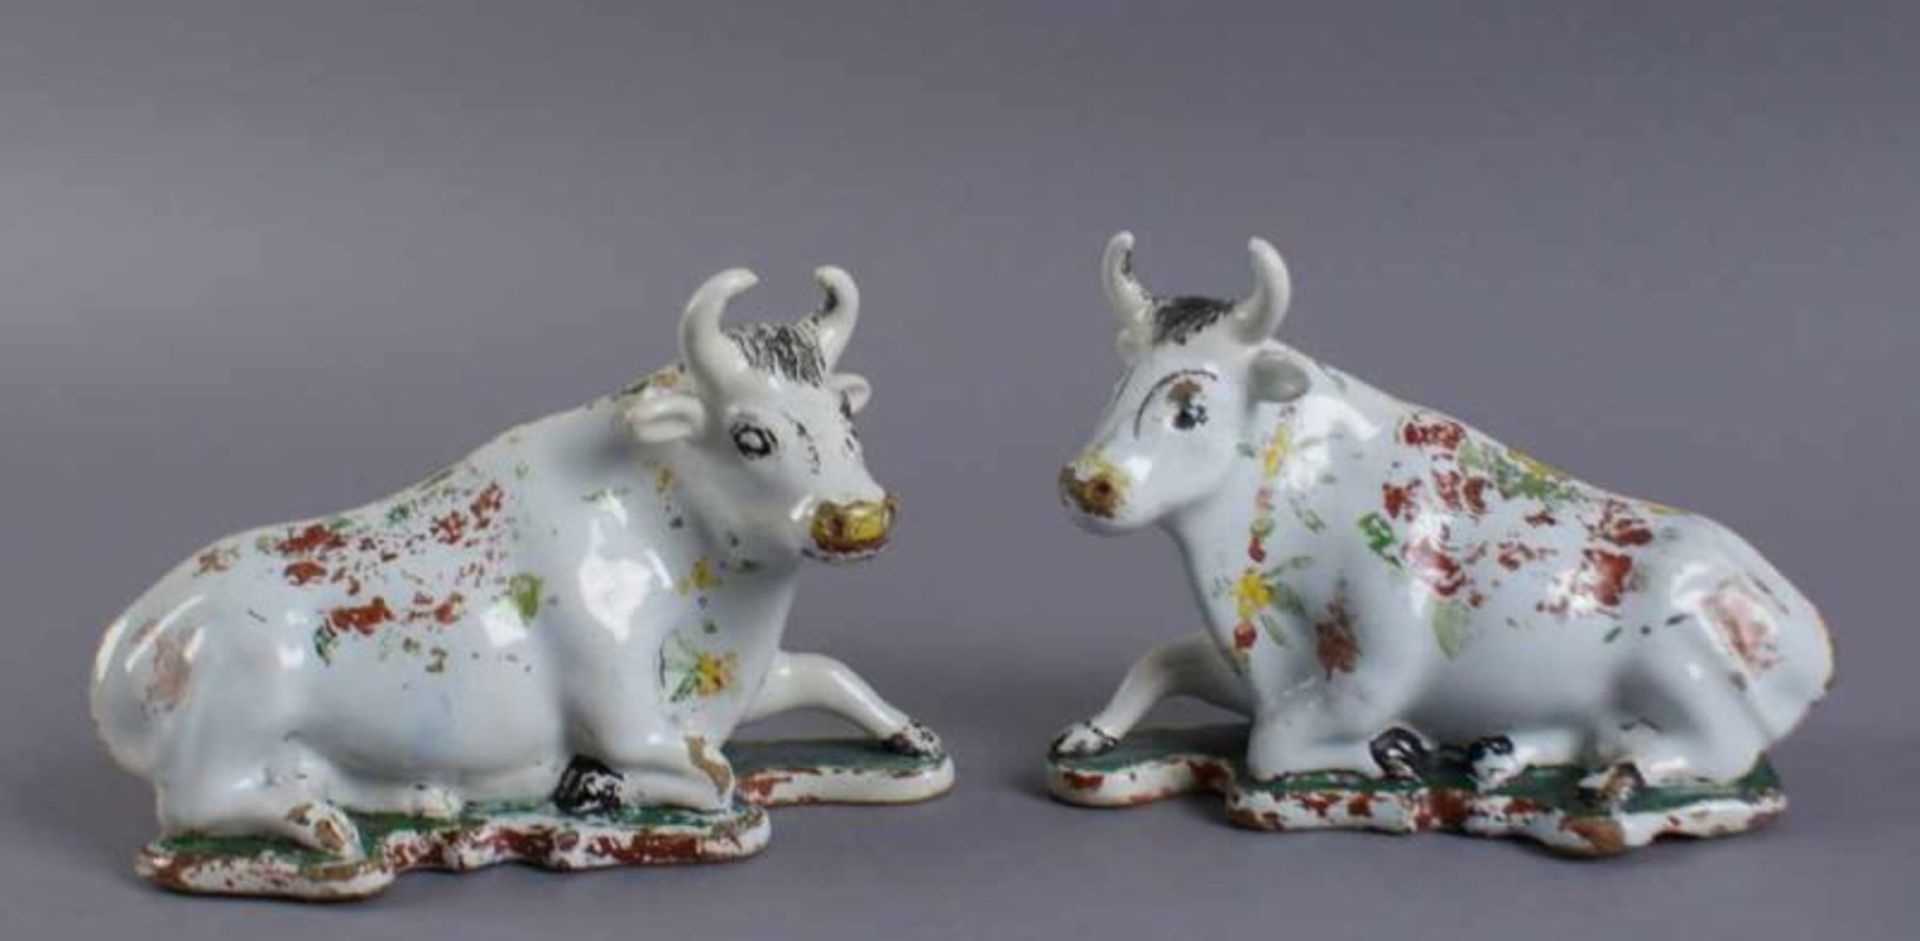 Zwei Kühe, Delft, bunt glasierte Keramik, 18. JH, alte Restaurierung, 10x15,5 x7 cm 20.17 % buyer'